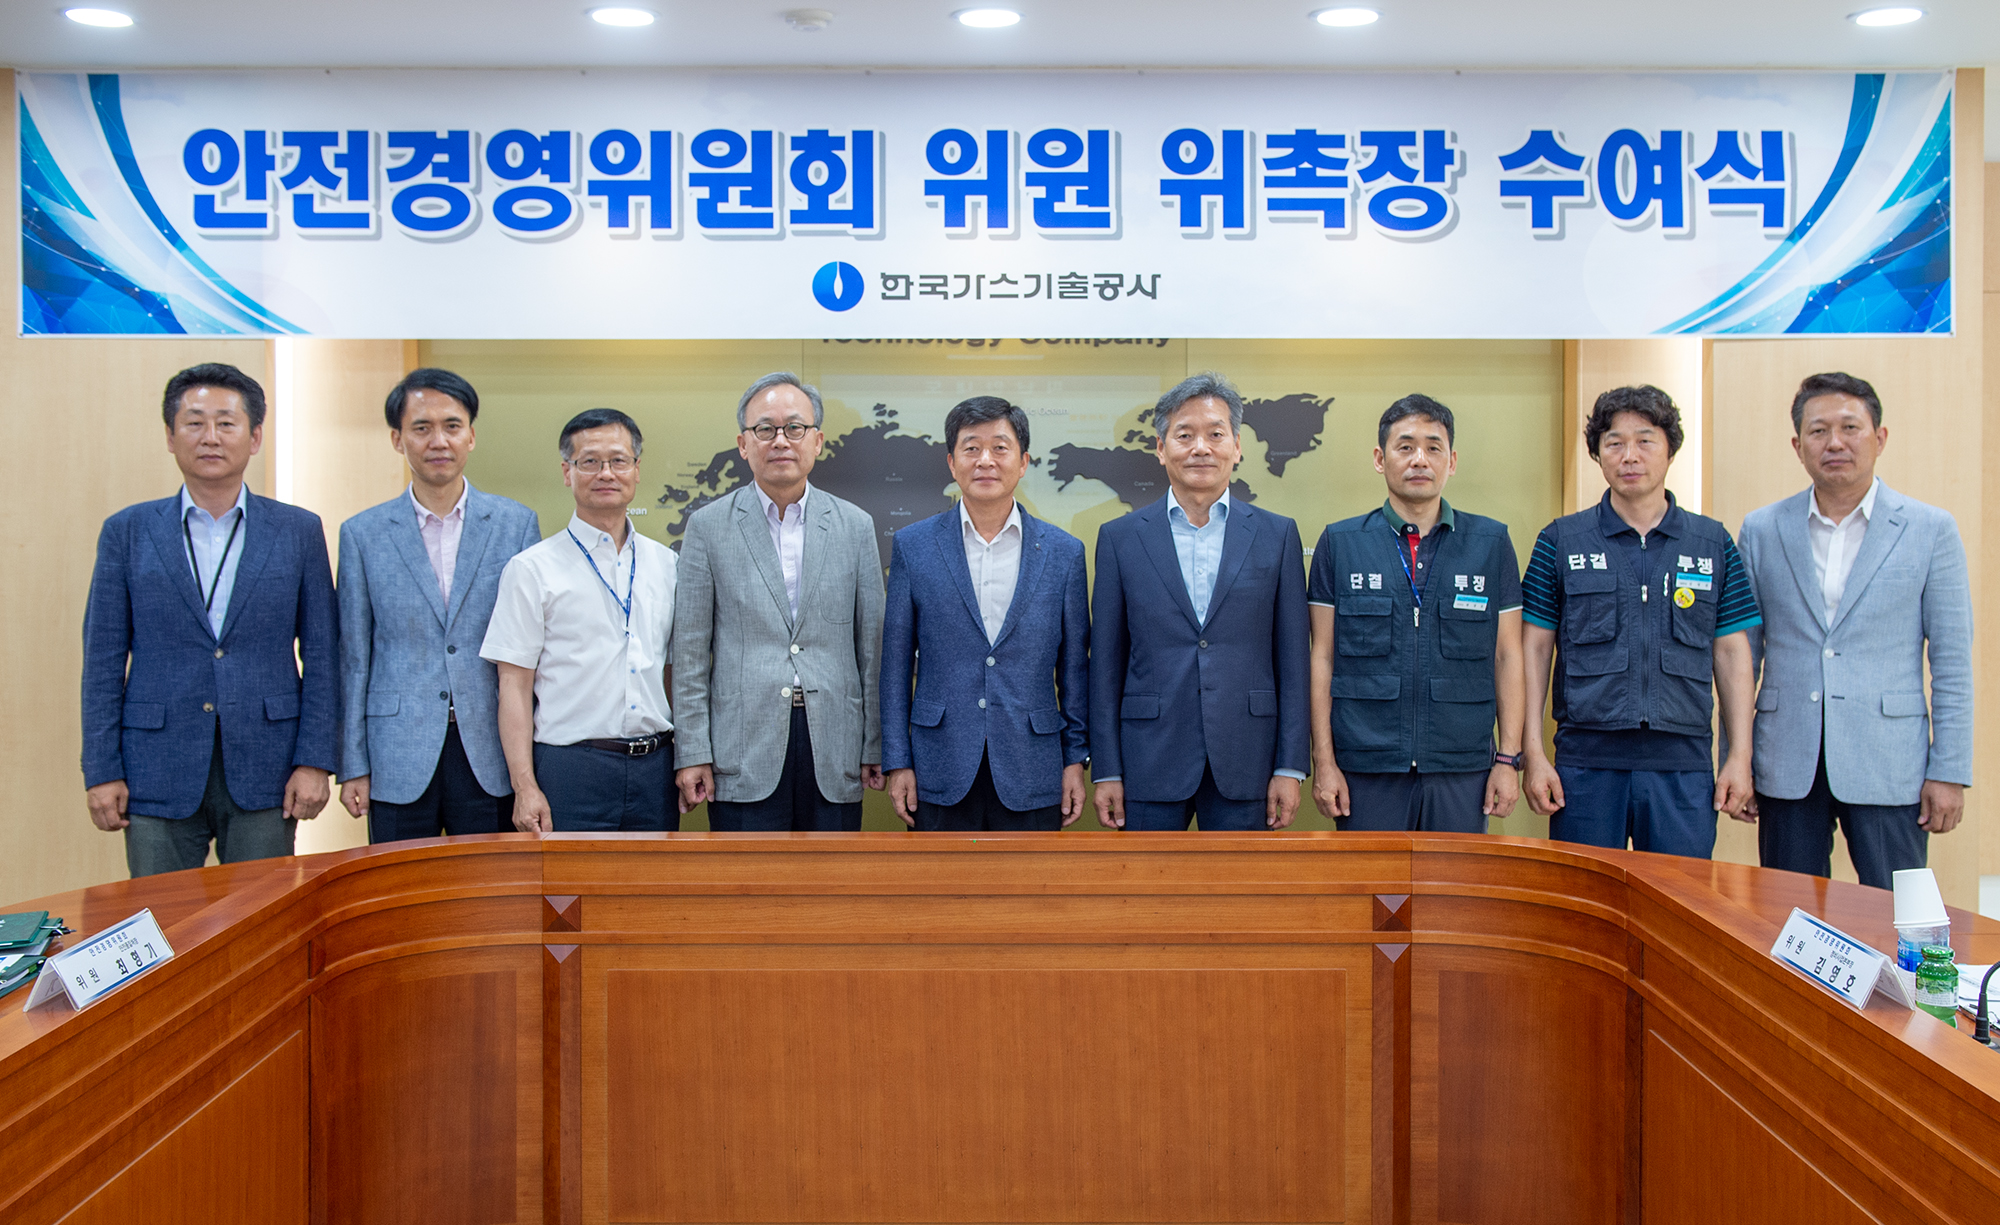 외부전문가 안전경영위원 위촉 및 2019년 제1차 안전경영위원회의 개최